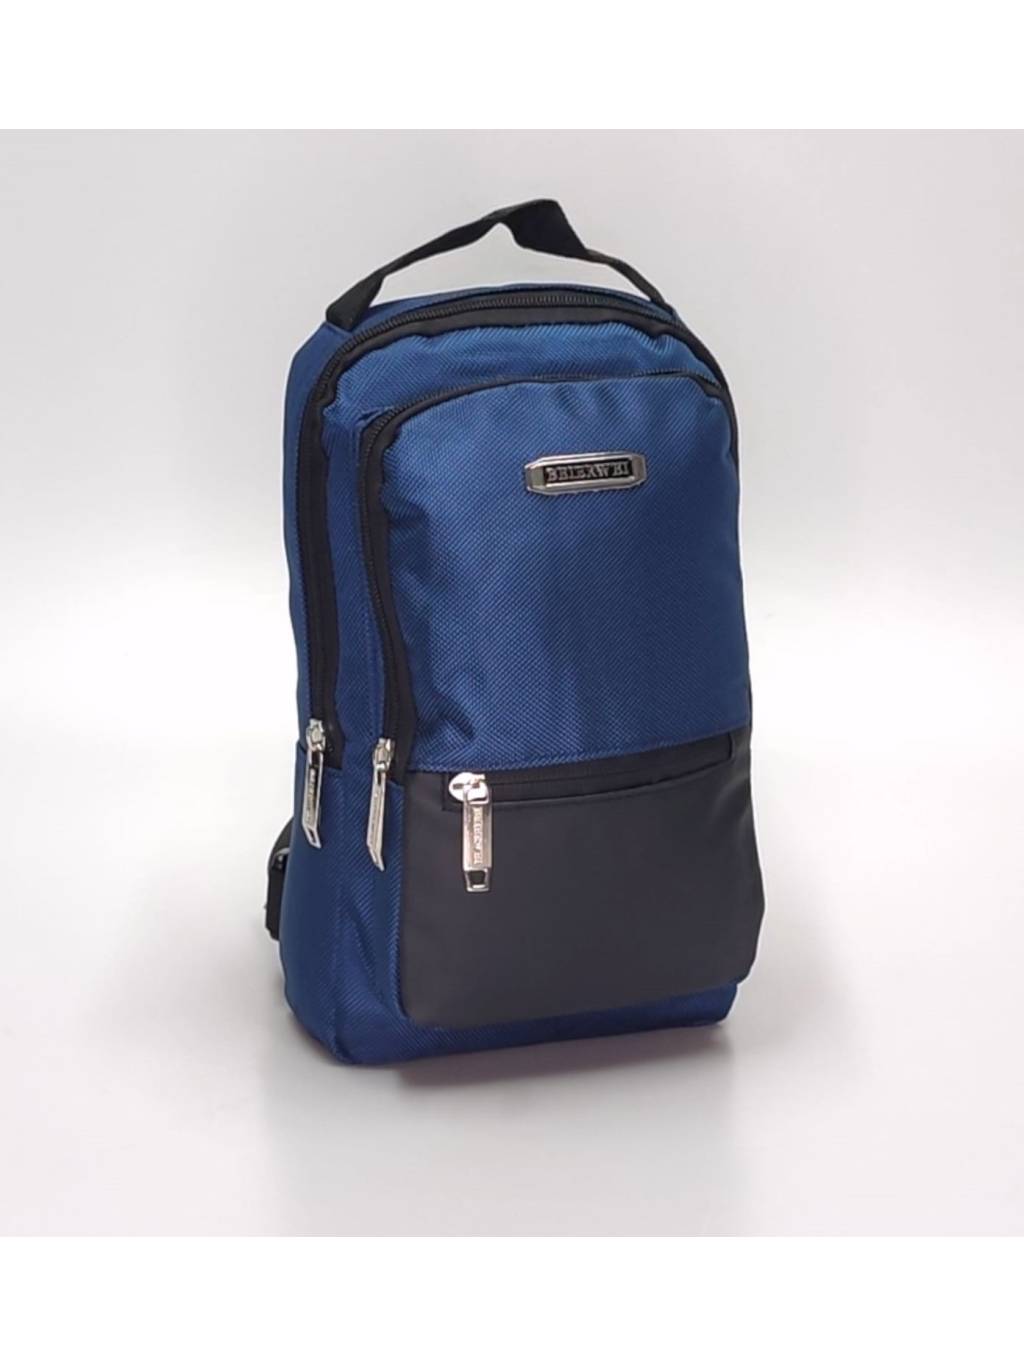 Pánska taška B7398 modrá www.kabelky vypredaj.eu (8)